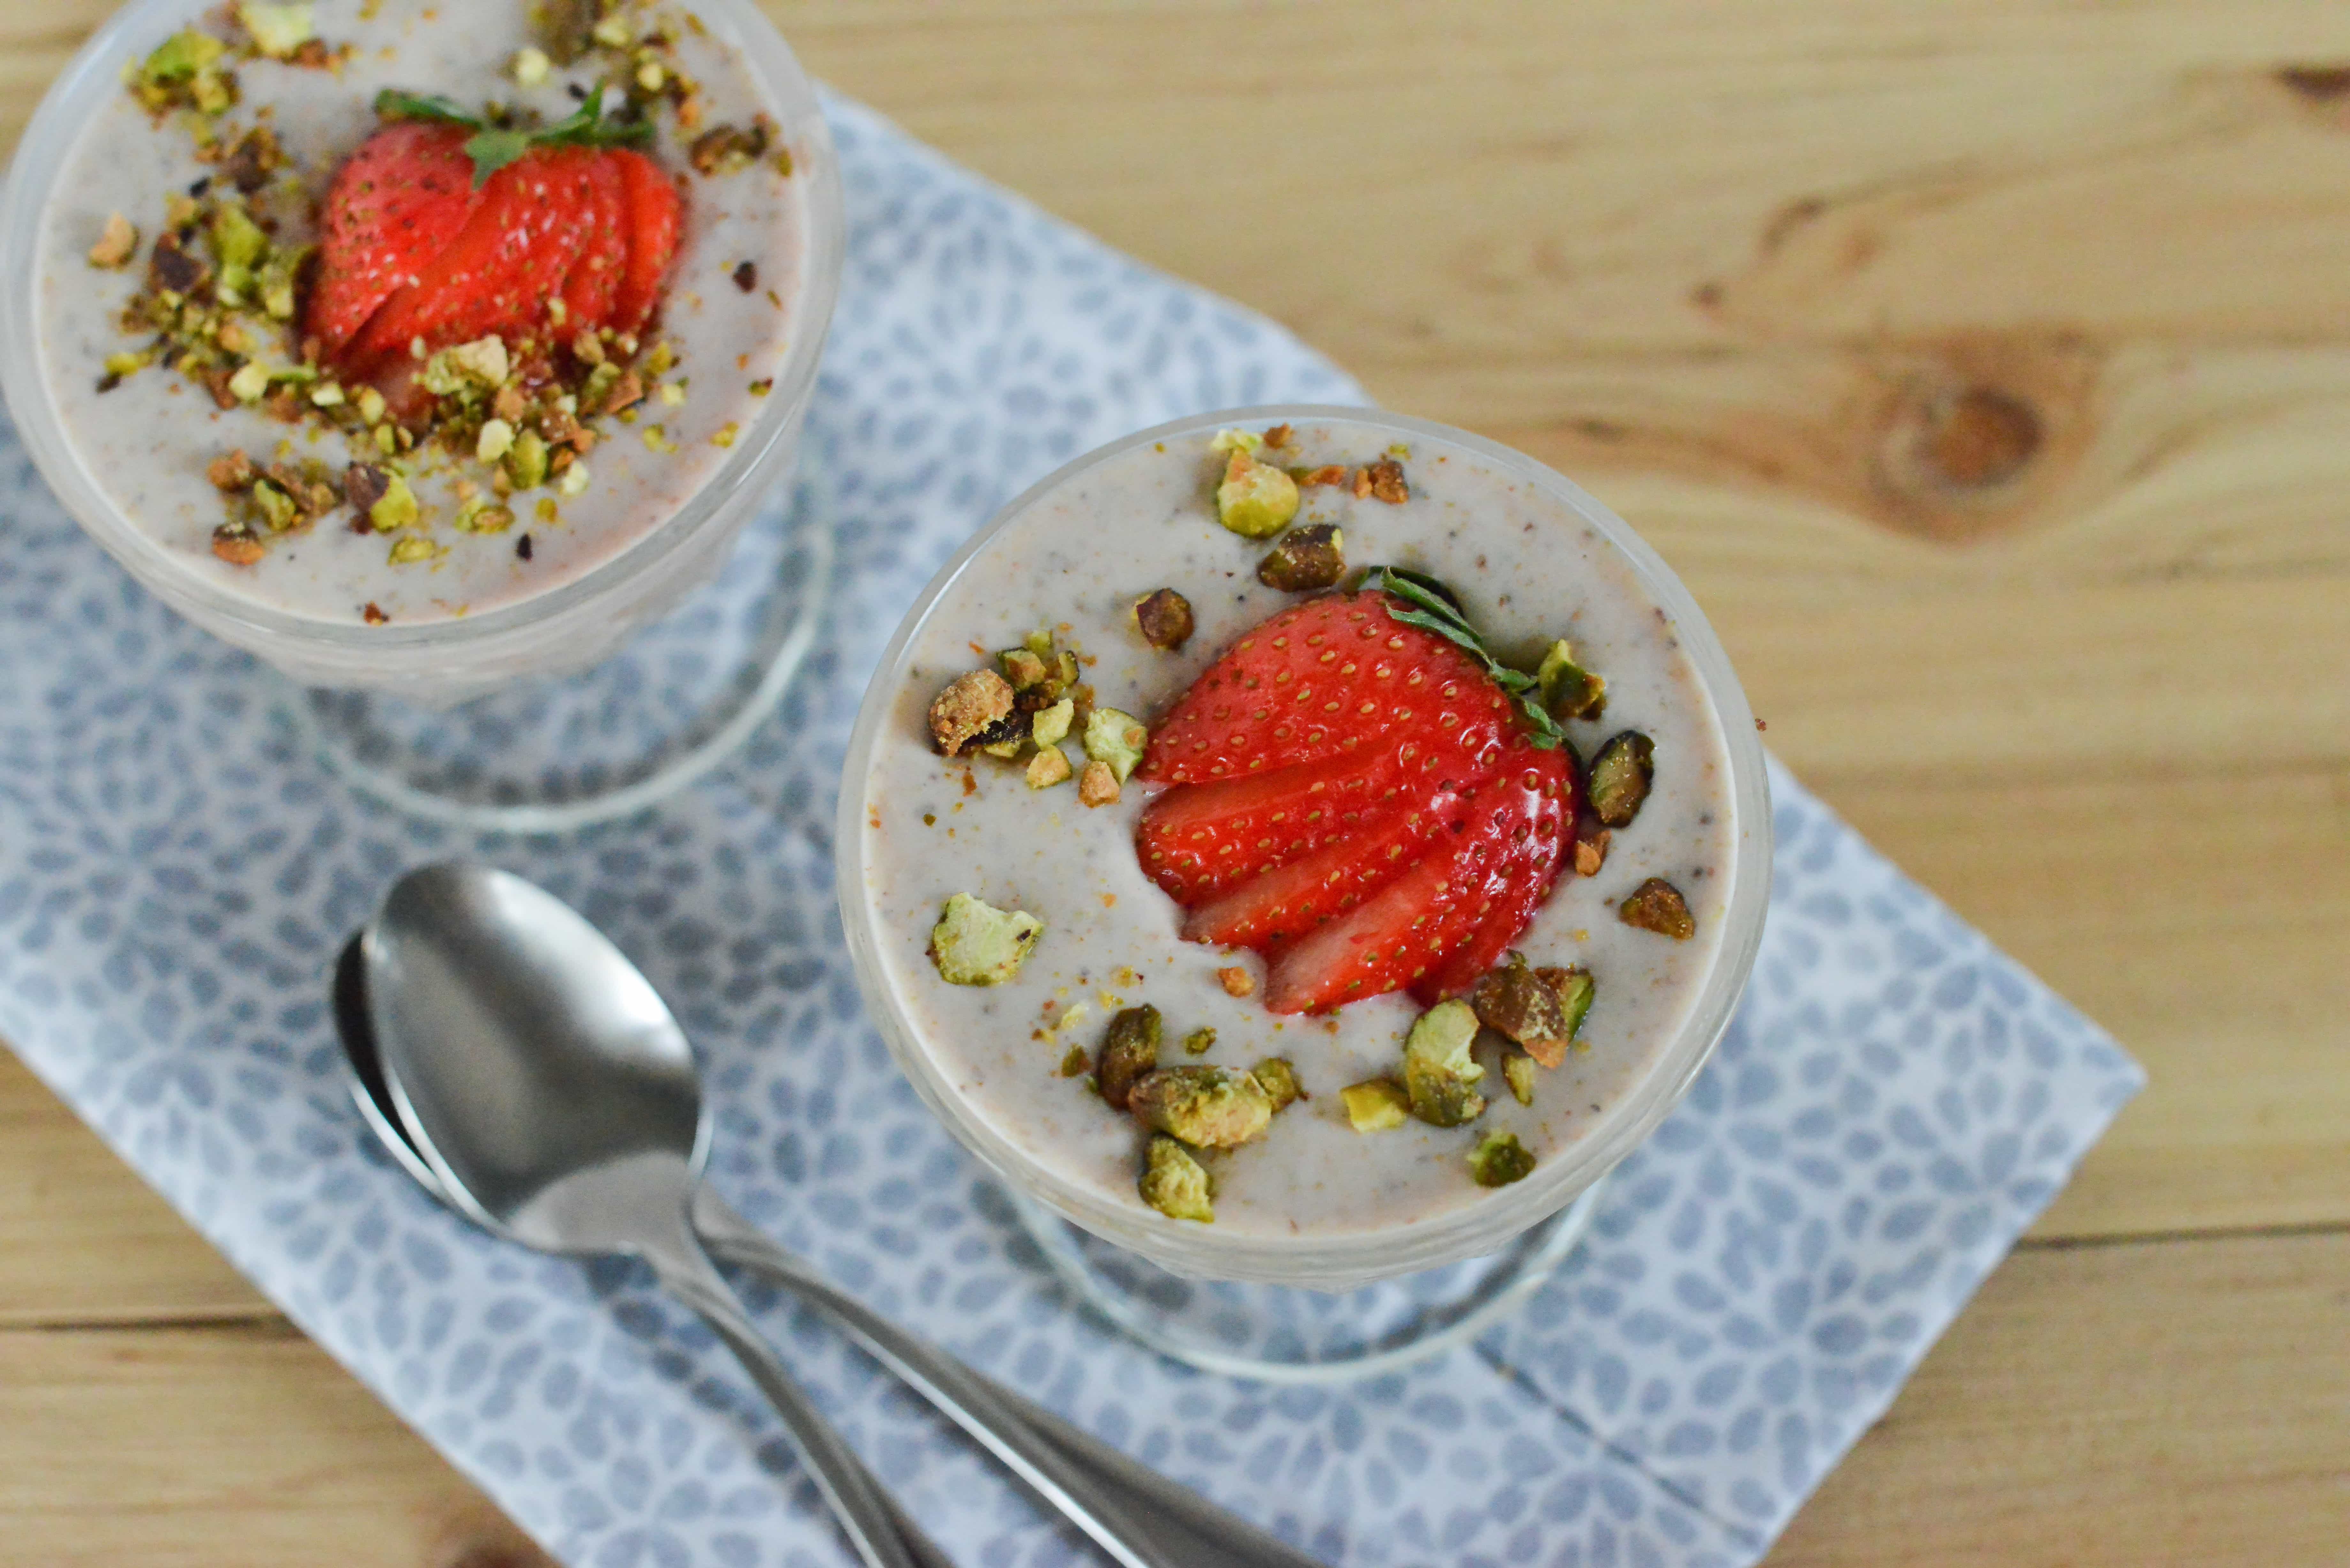 Links to Wonderful Pistachios Strawberry Orange Yogurt recipe